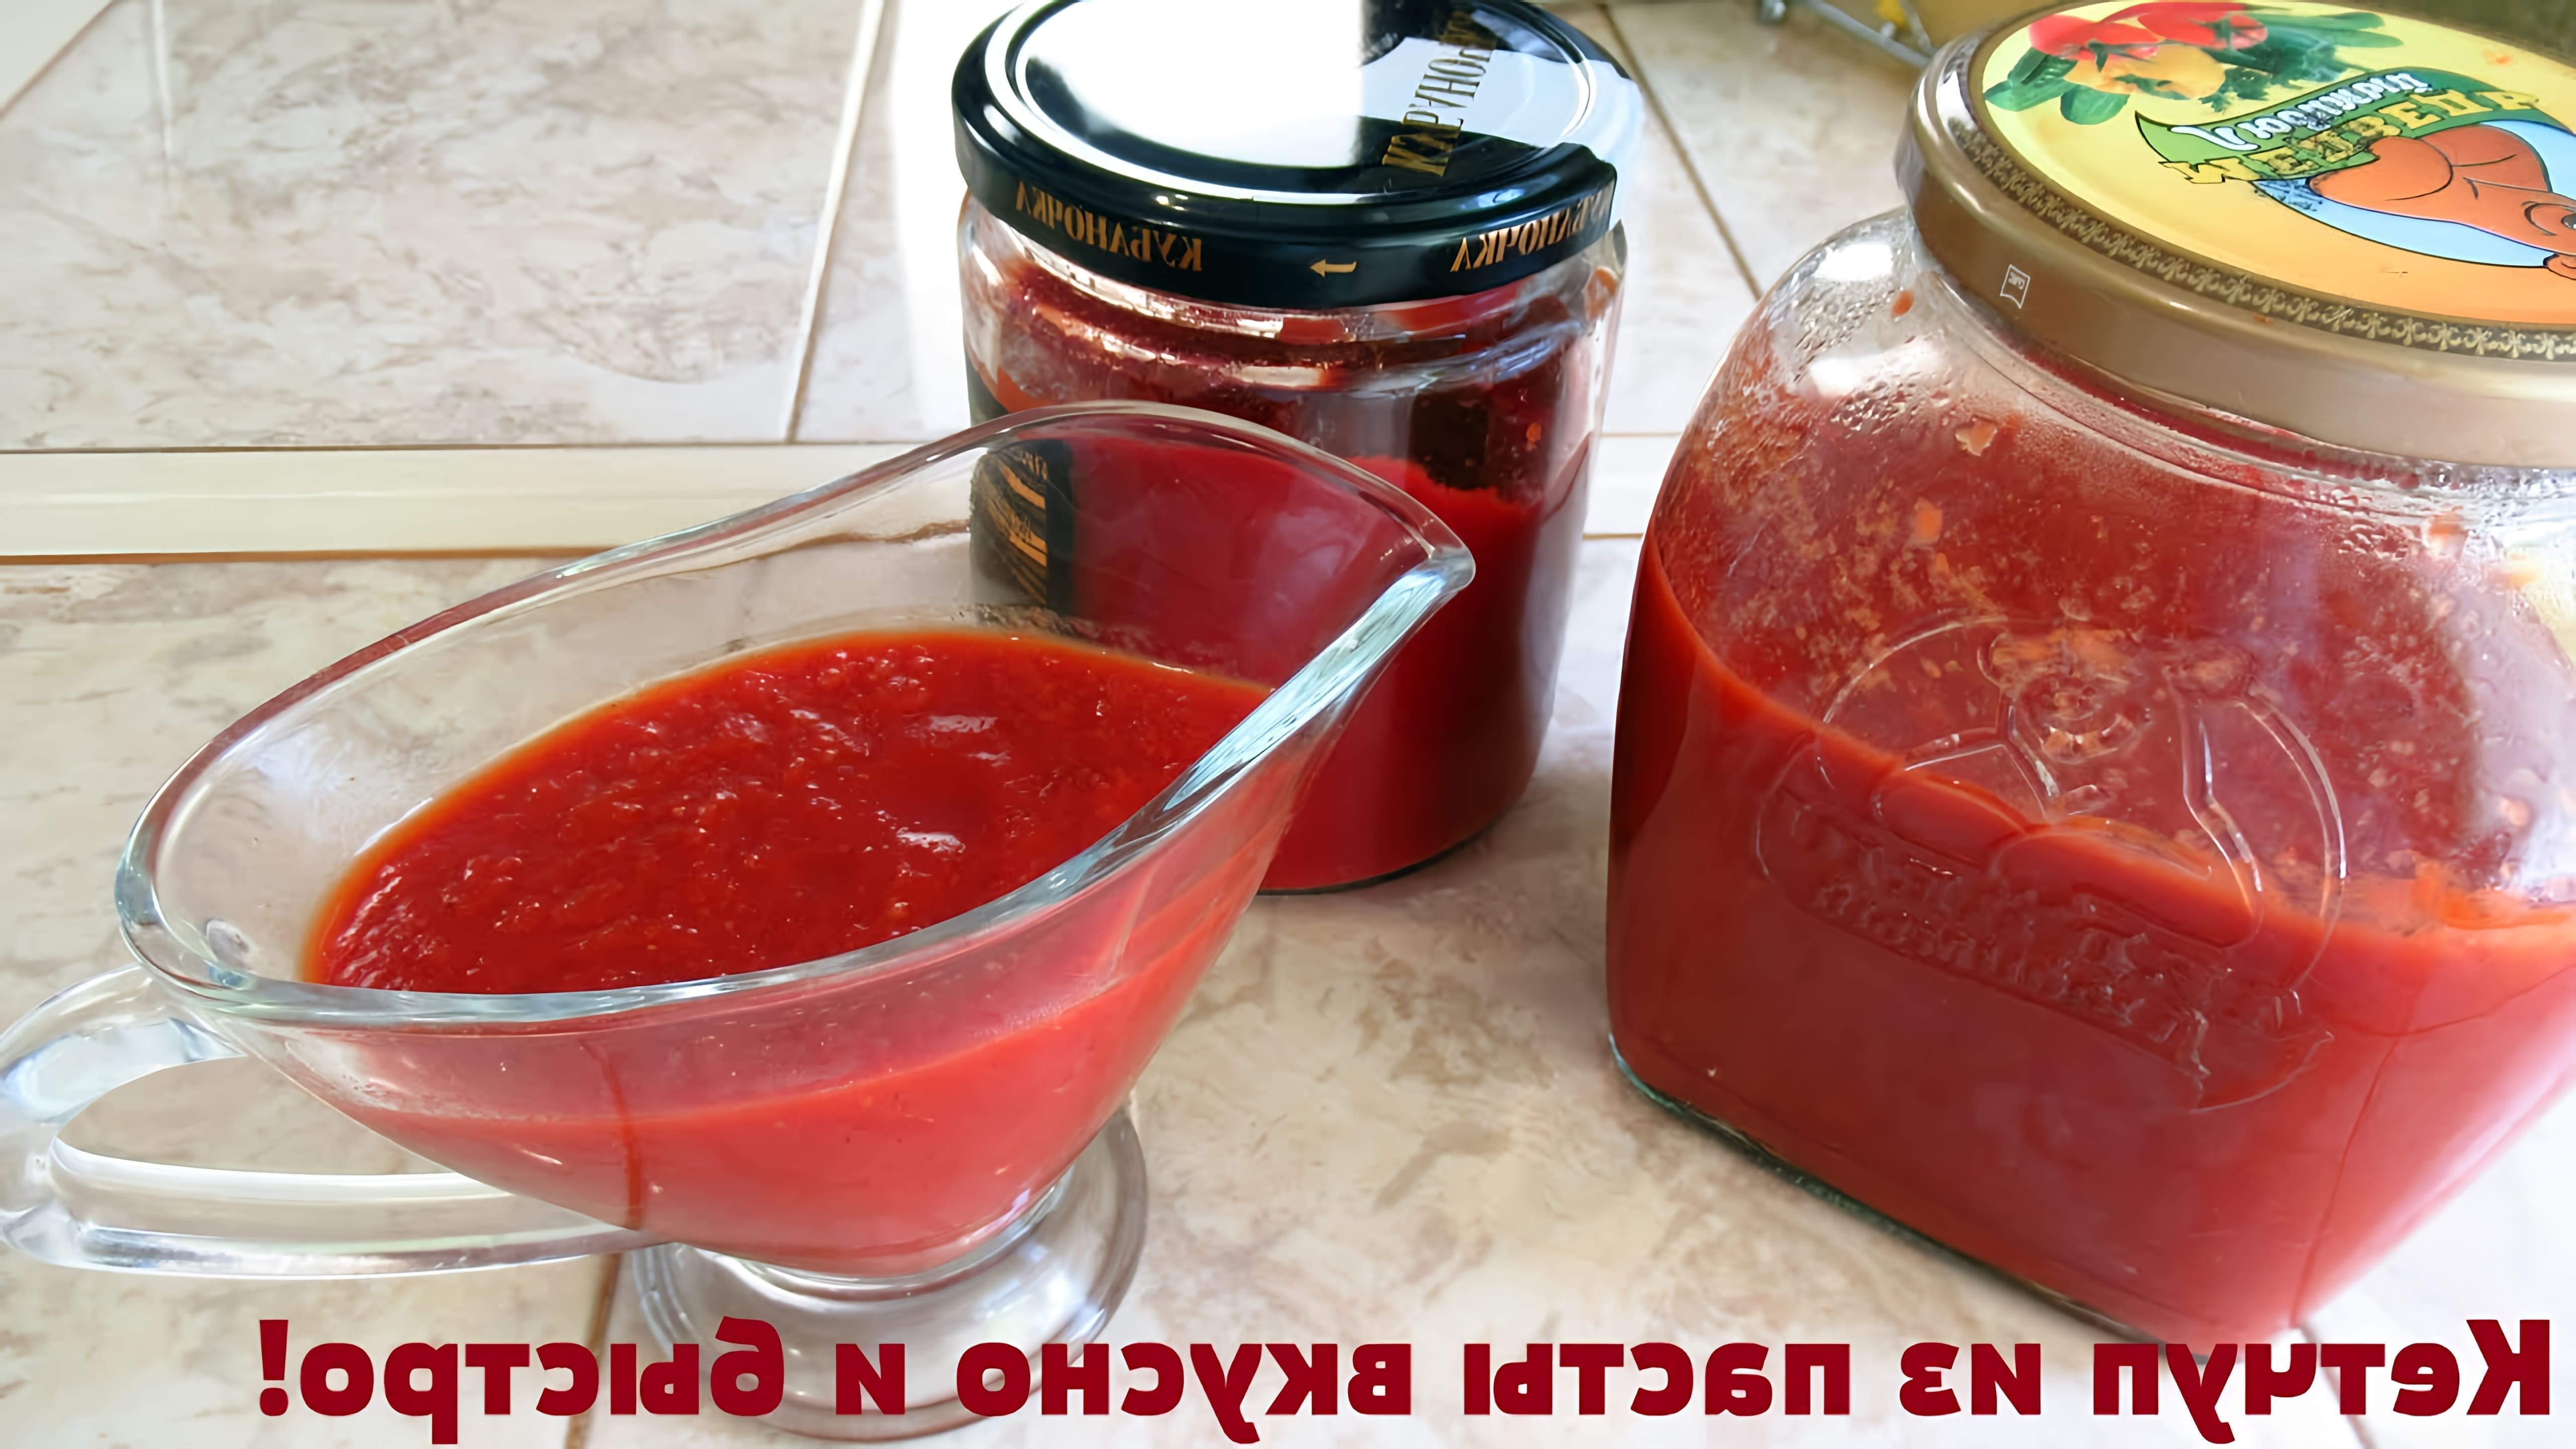 В этом видео демонстрируется процесс приготовления кетчупа из покупной томатной пасты